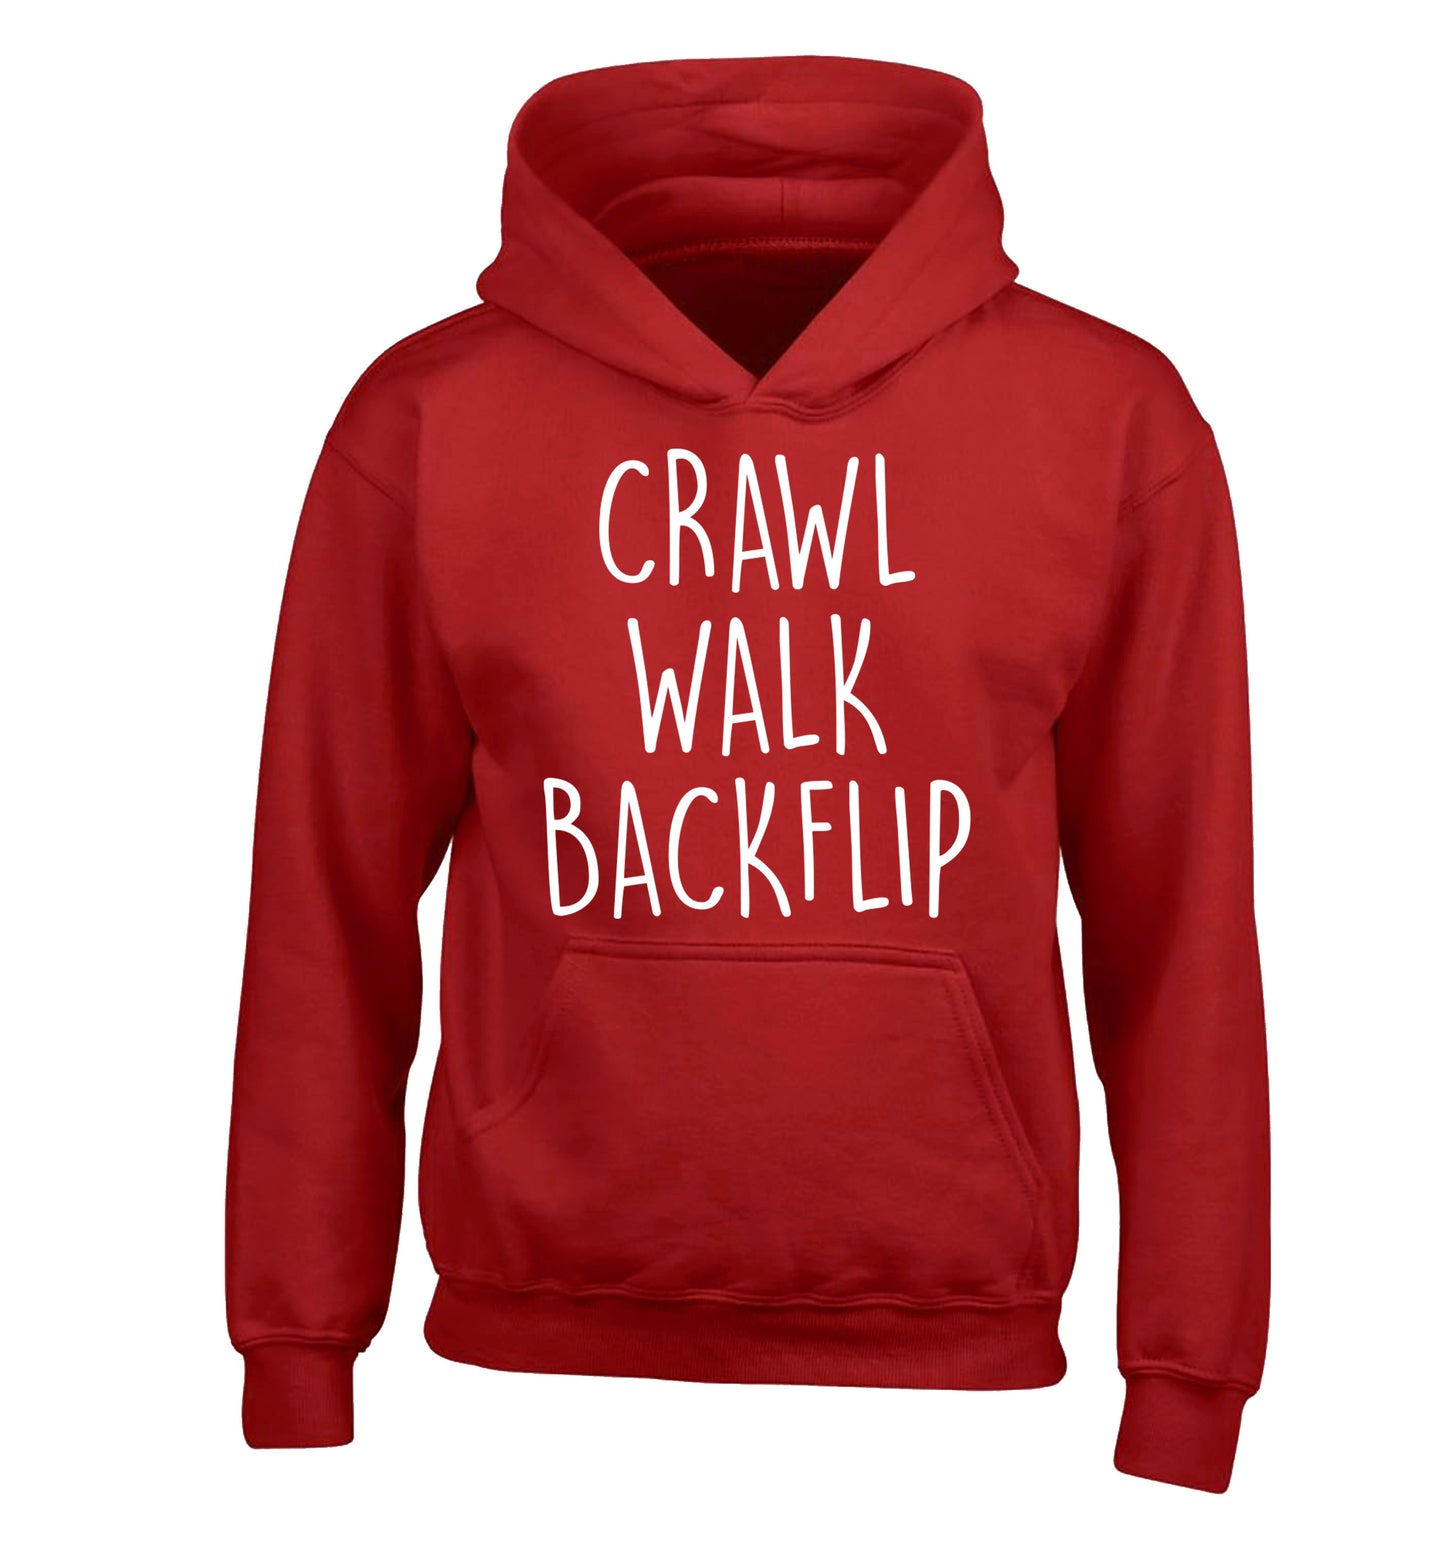 Crawl Walk Backflip children's red hoodie 12-13 Years